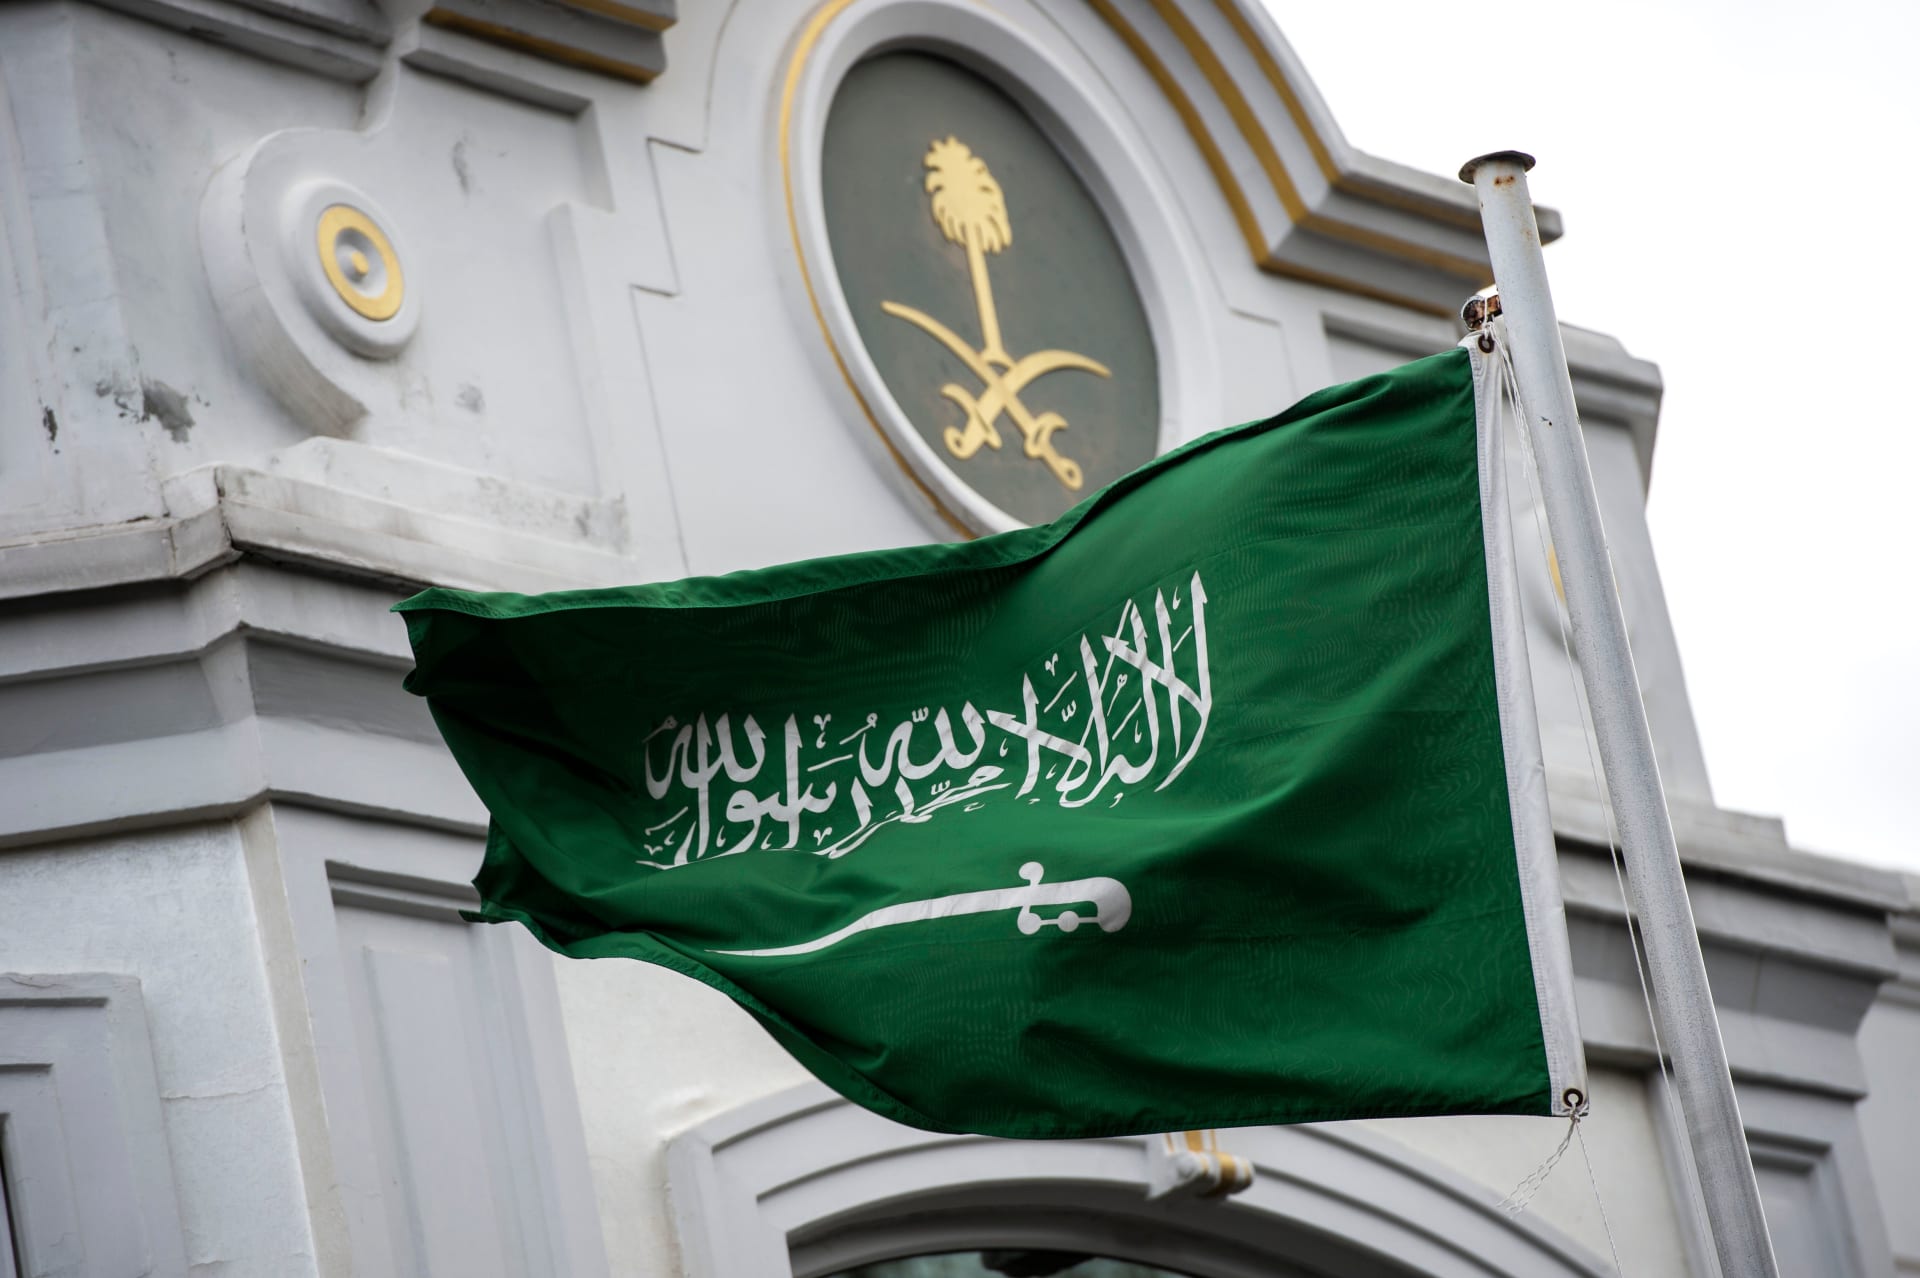 النيابة العامة السعودية تكشف عقوبة "تحقير أو إهانة" العلم الوطني